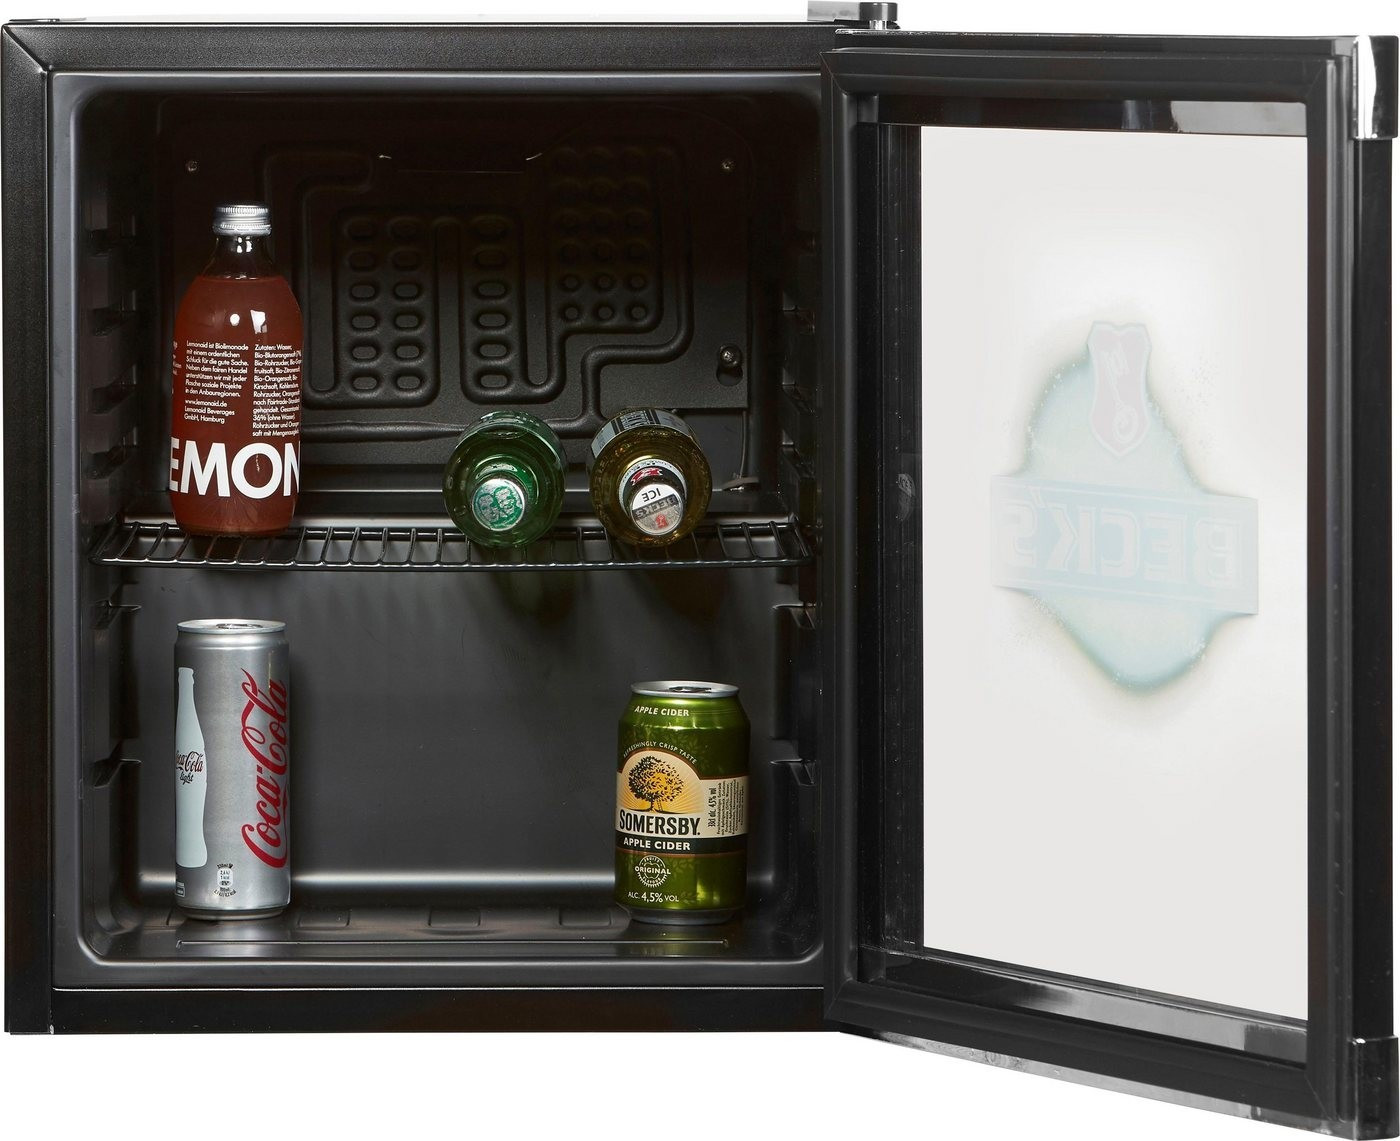 HIGHCUBE AC/DC (HUS-HC203) Getränkekühlschrank - bei expert kaufen